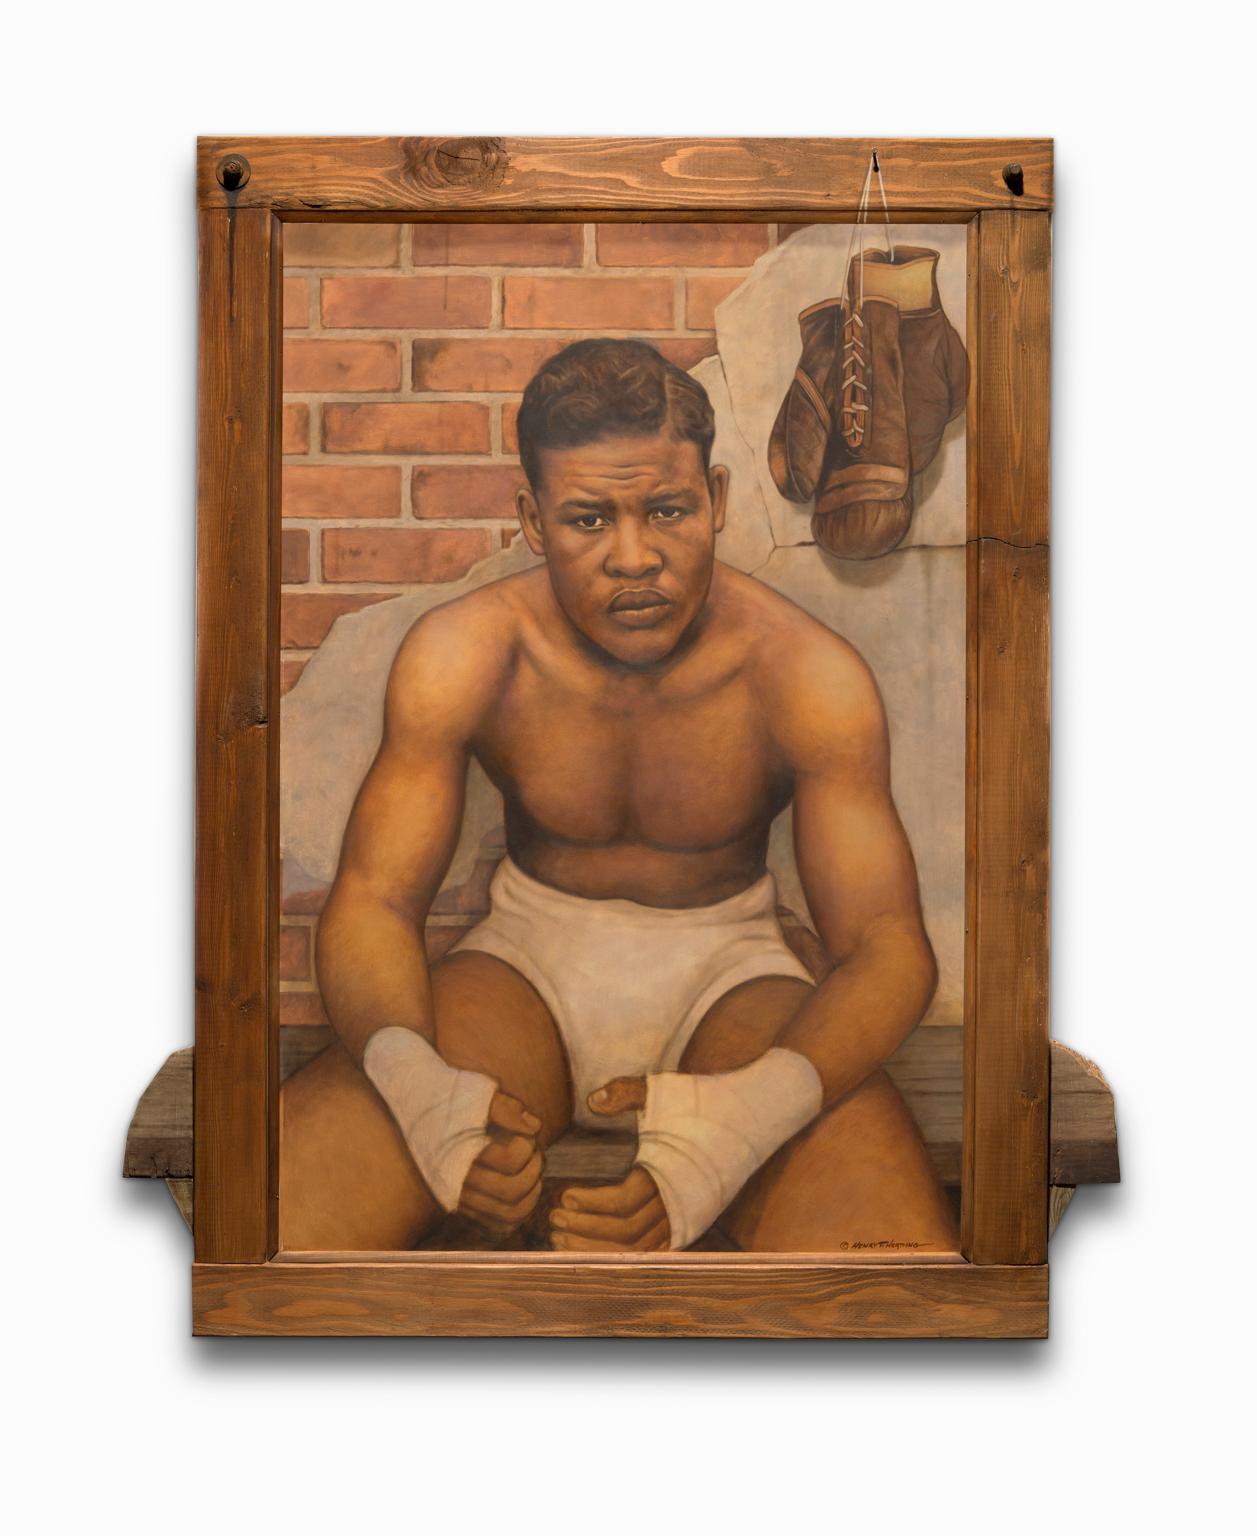 Portrait Painting Henry Heading - "Joe Louis" Huile sur panneau avec supports mélangés, portrait emblématique d'Amérindien